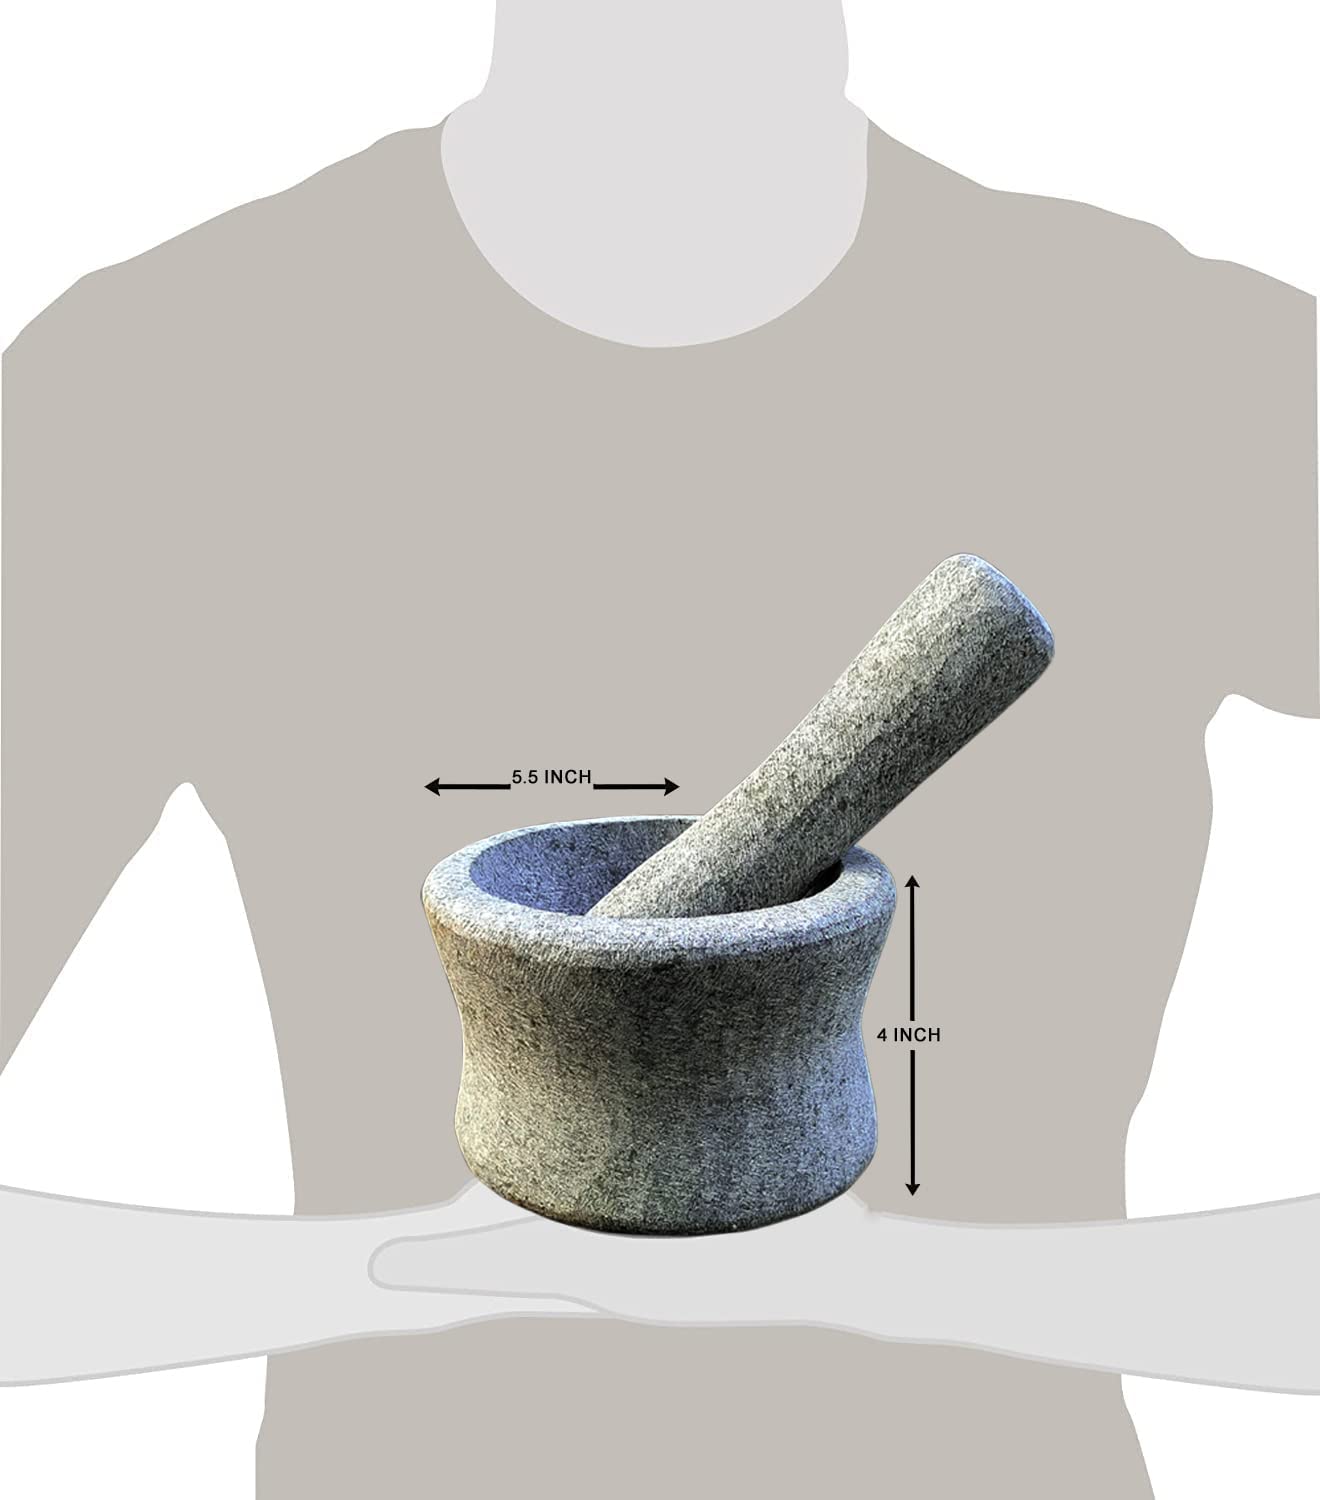 EZAHK Cylindrical unpolished Stone Mortar and Pestle Set (6 in)